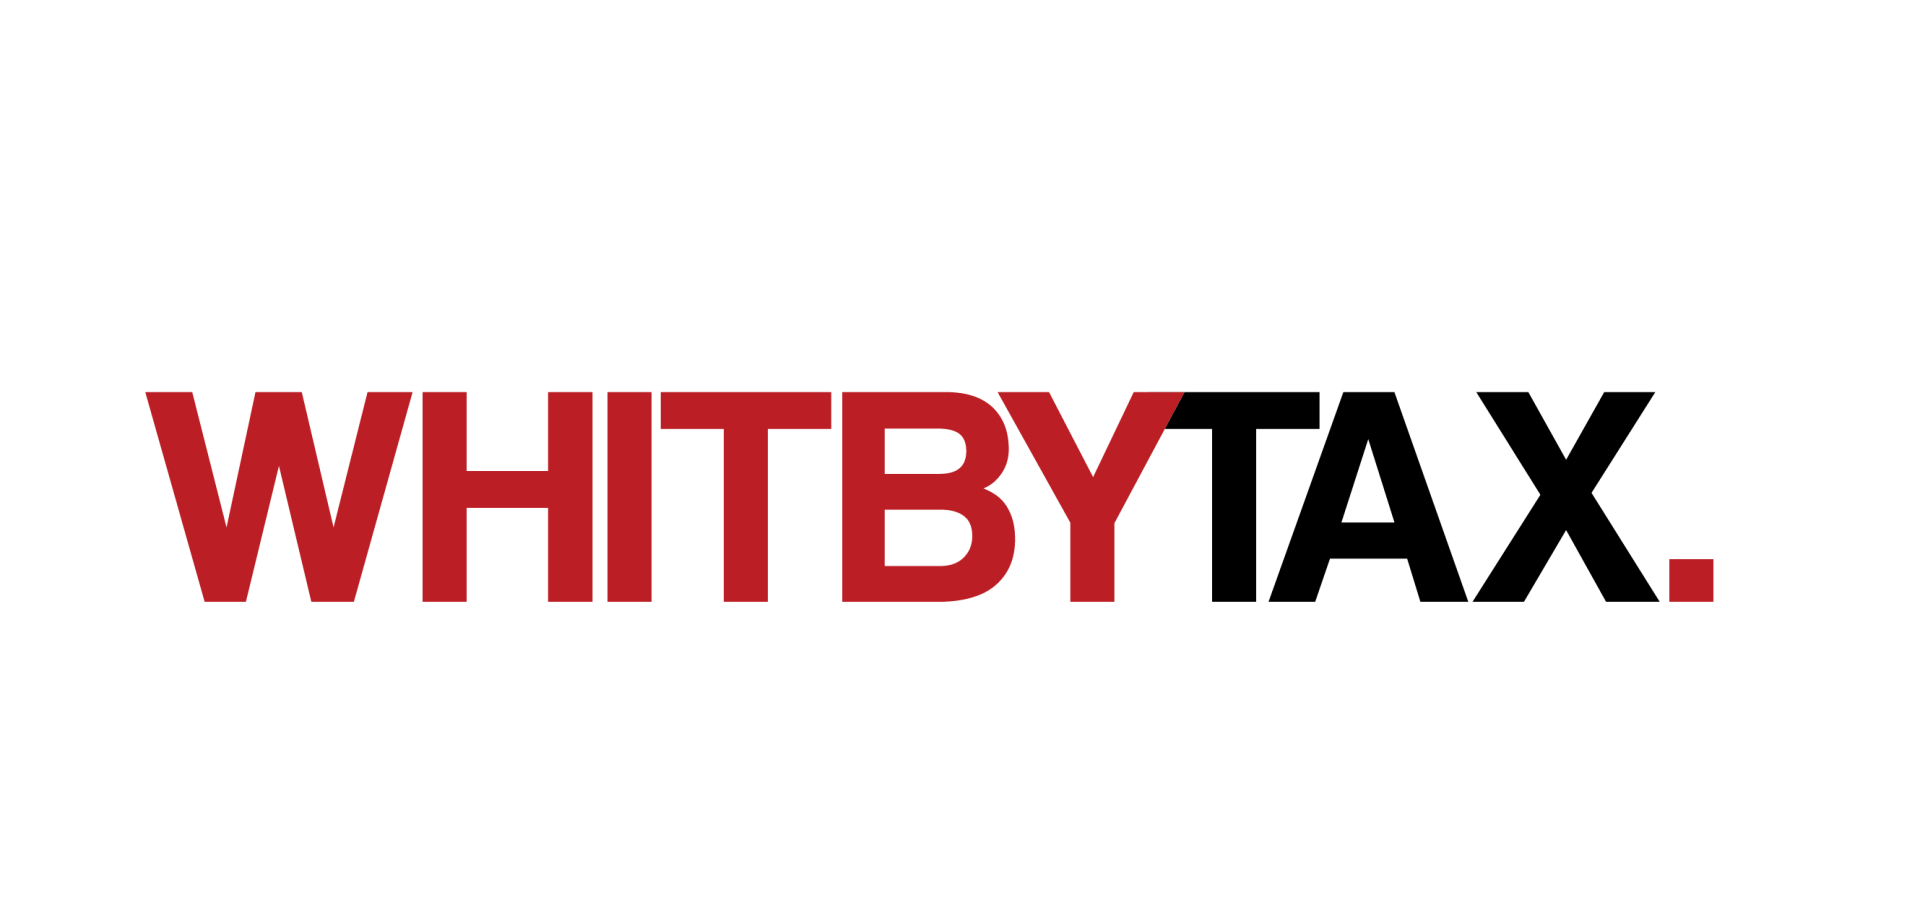 Whitby Tax logo